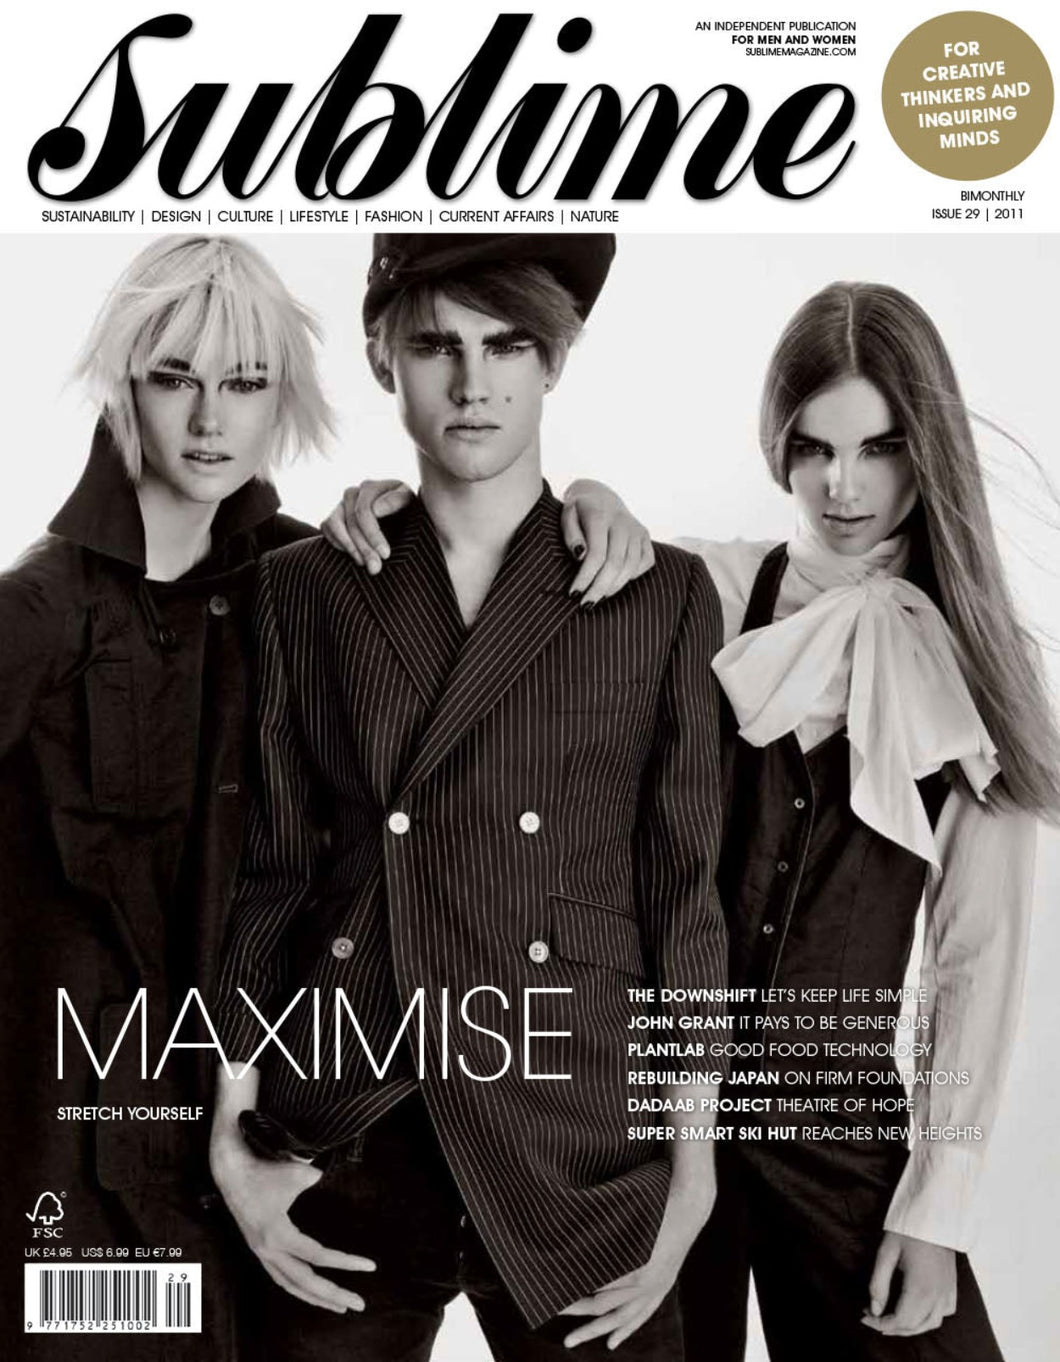 Issue 29 - Maximise